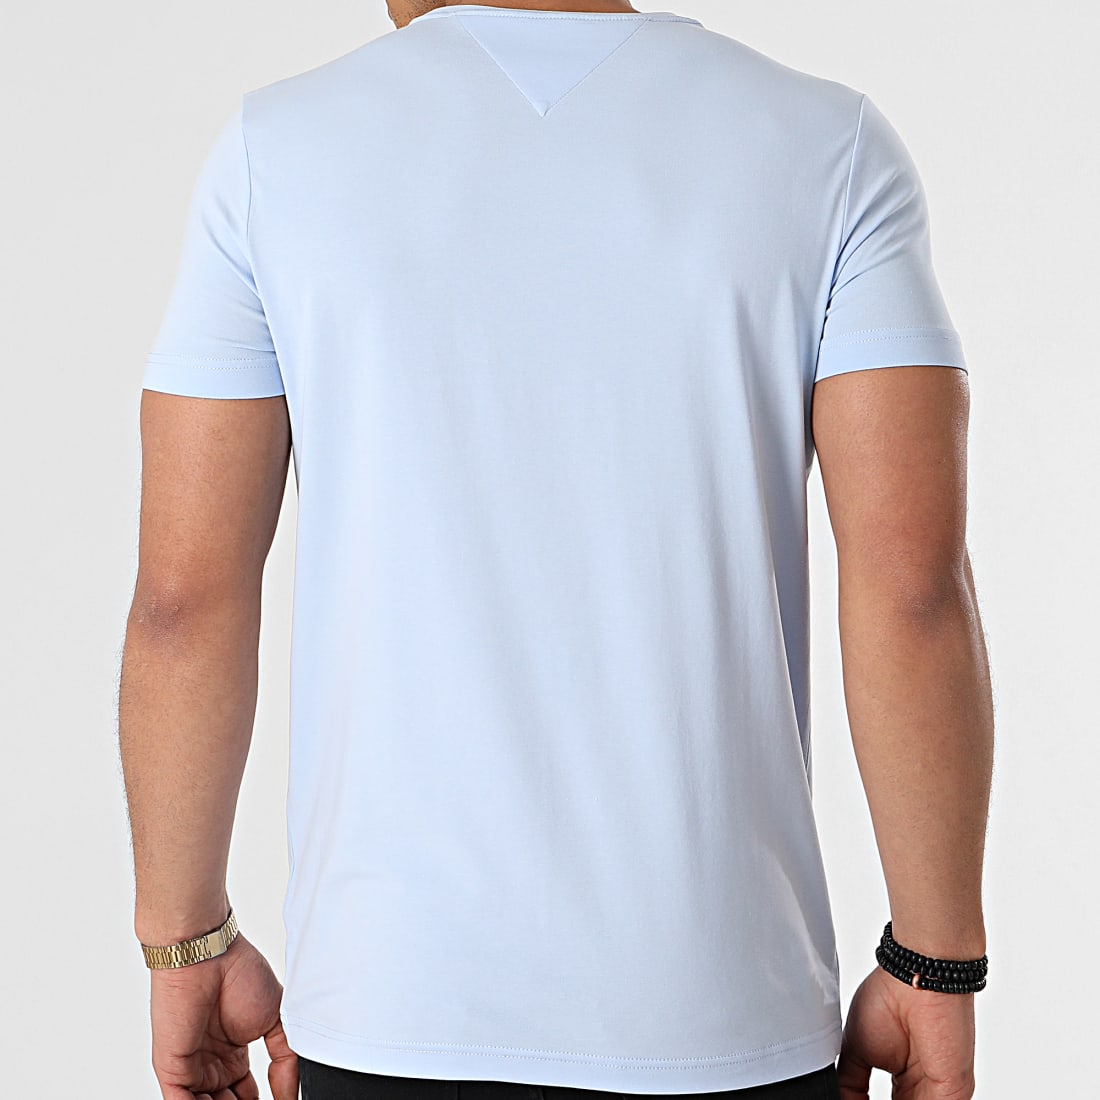 Acheter Tee-shirt de sport homme Stretch Bleu clair ? Bon et bon